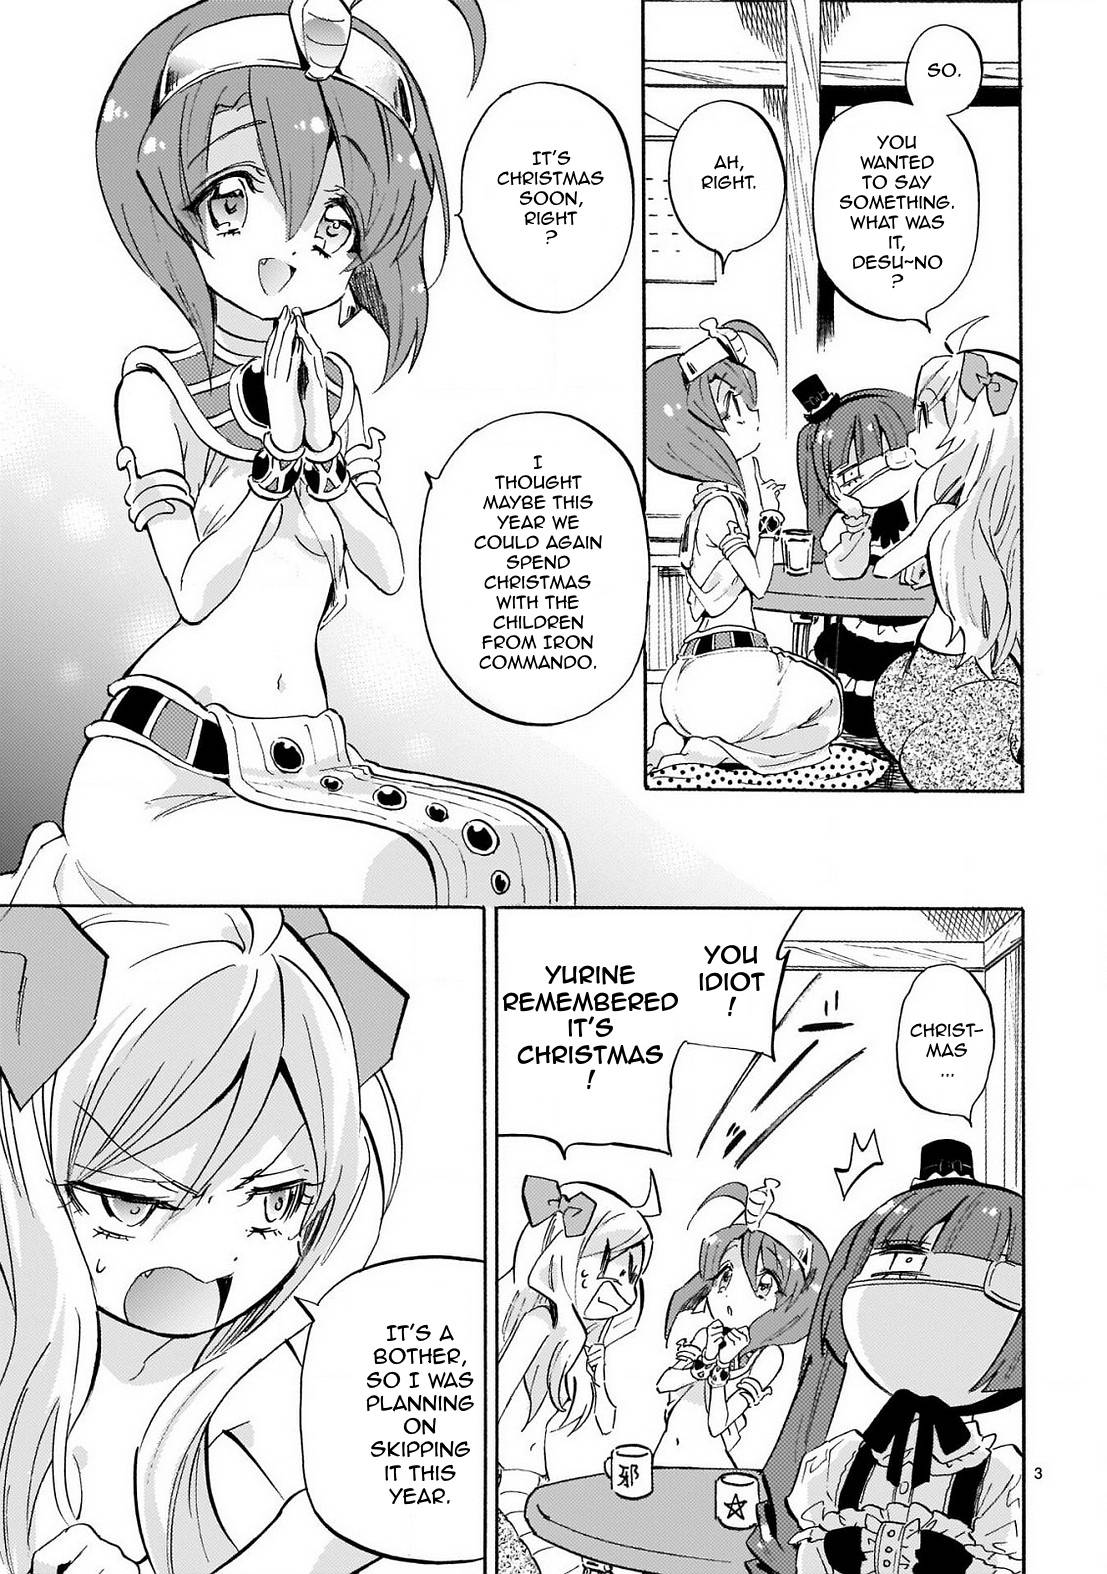 Jashin-chan Dropkick chapter 229 page 3